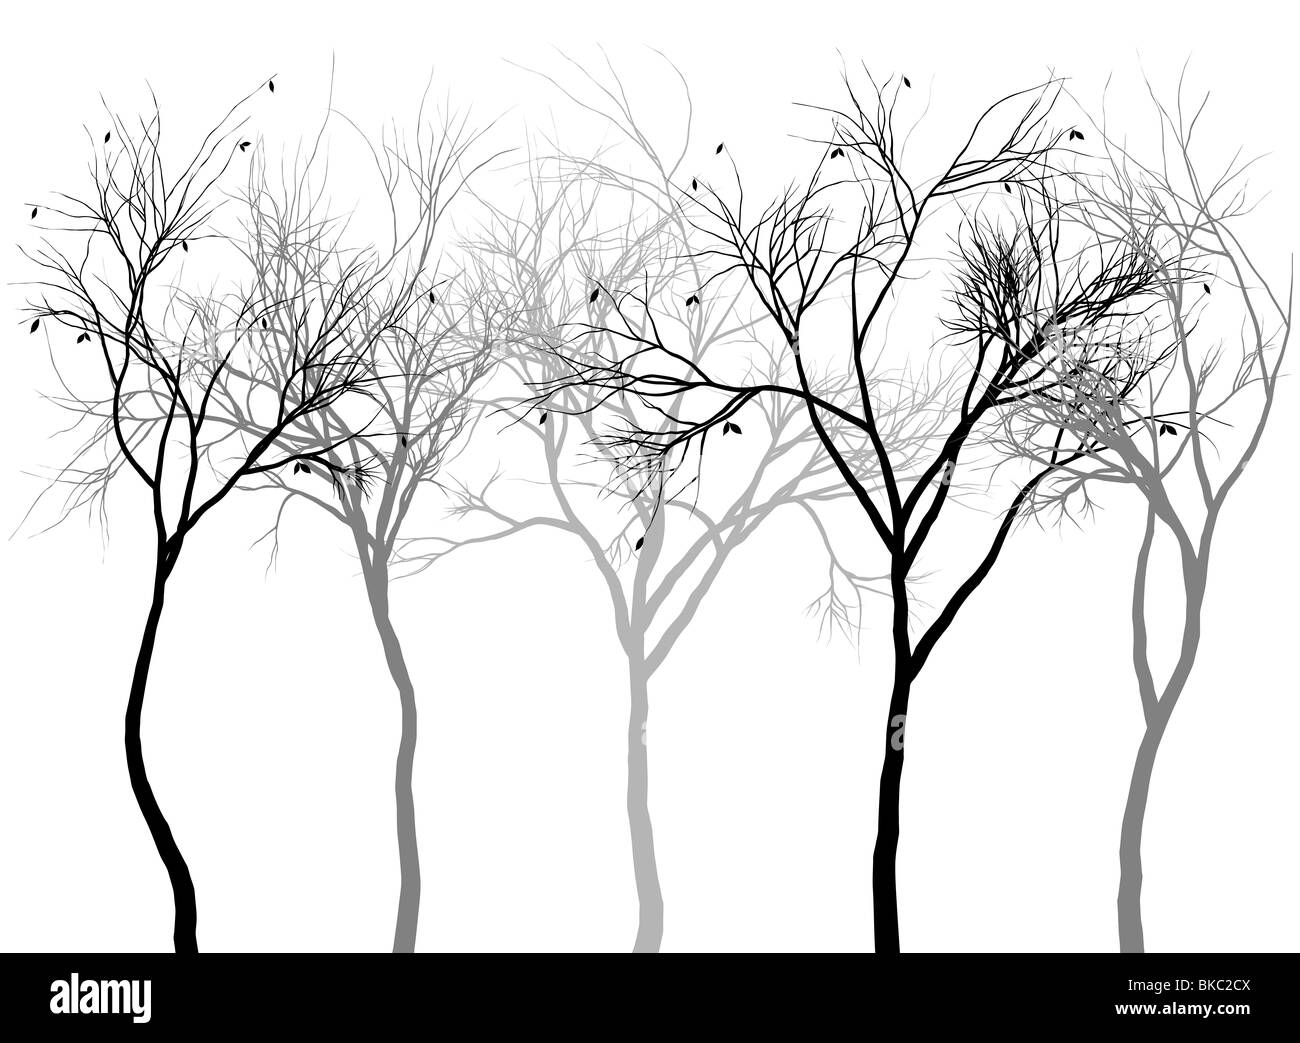 La forêt brumeuse, silhouettes d'arbres détaillée Banque D'Images